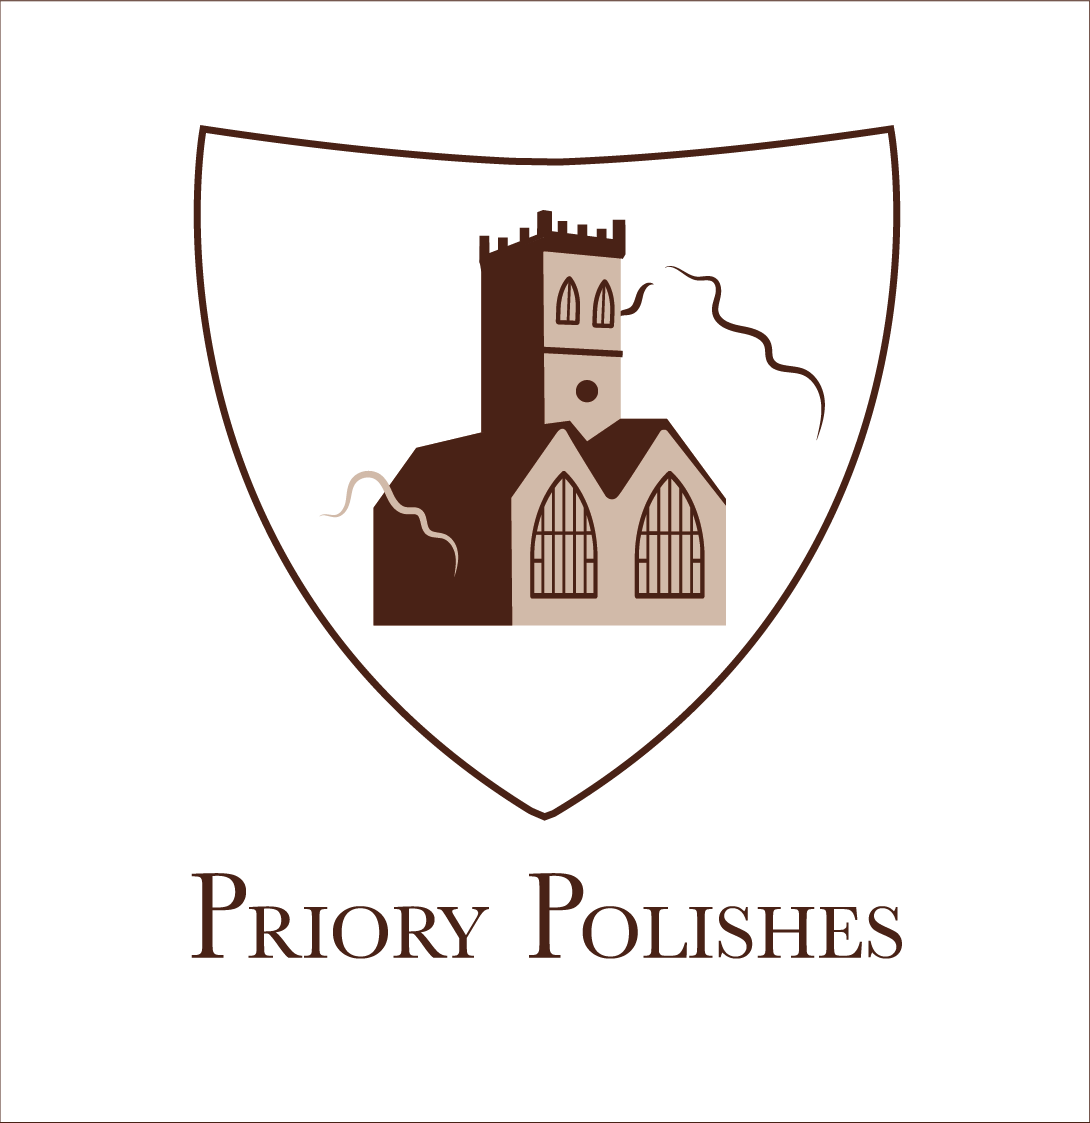 (c) Priorypolishes.co.uk